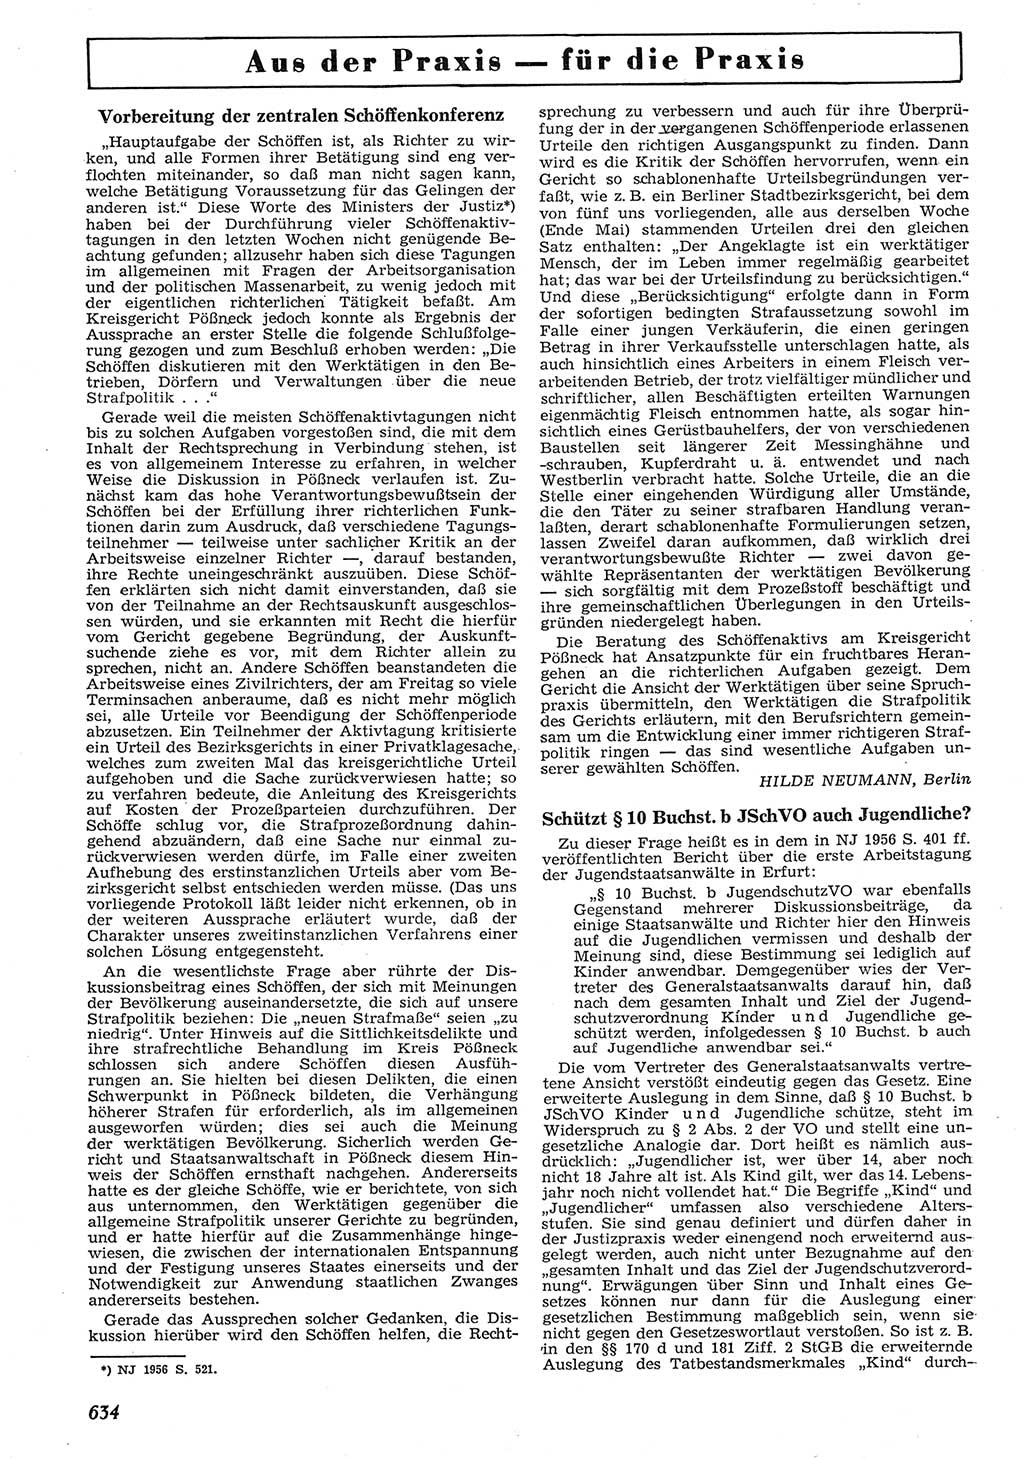 Neue Justiz (NJ), Zeitschrift für Recht und Rechtswissenschaft [Deutsche Demokratische Republik (DDR)], 10. Jahrgang 1956, Seite 634 (NJ DDR 1956, S. 634)